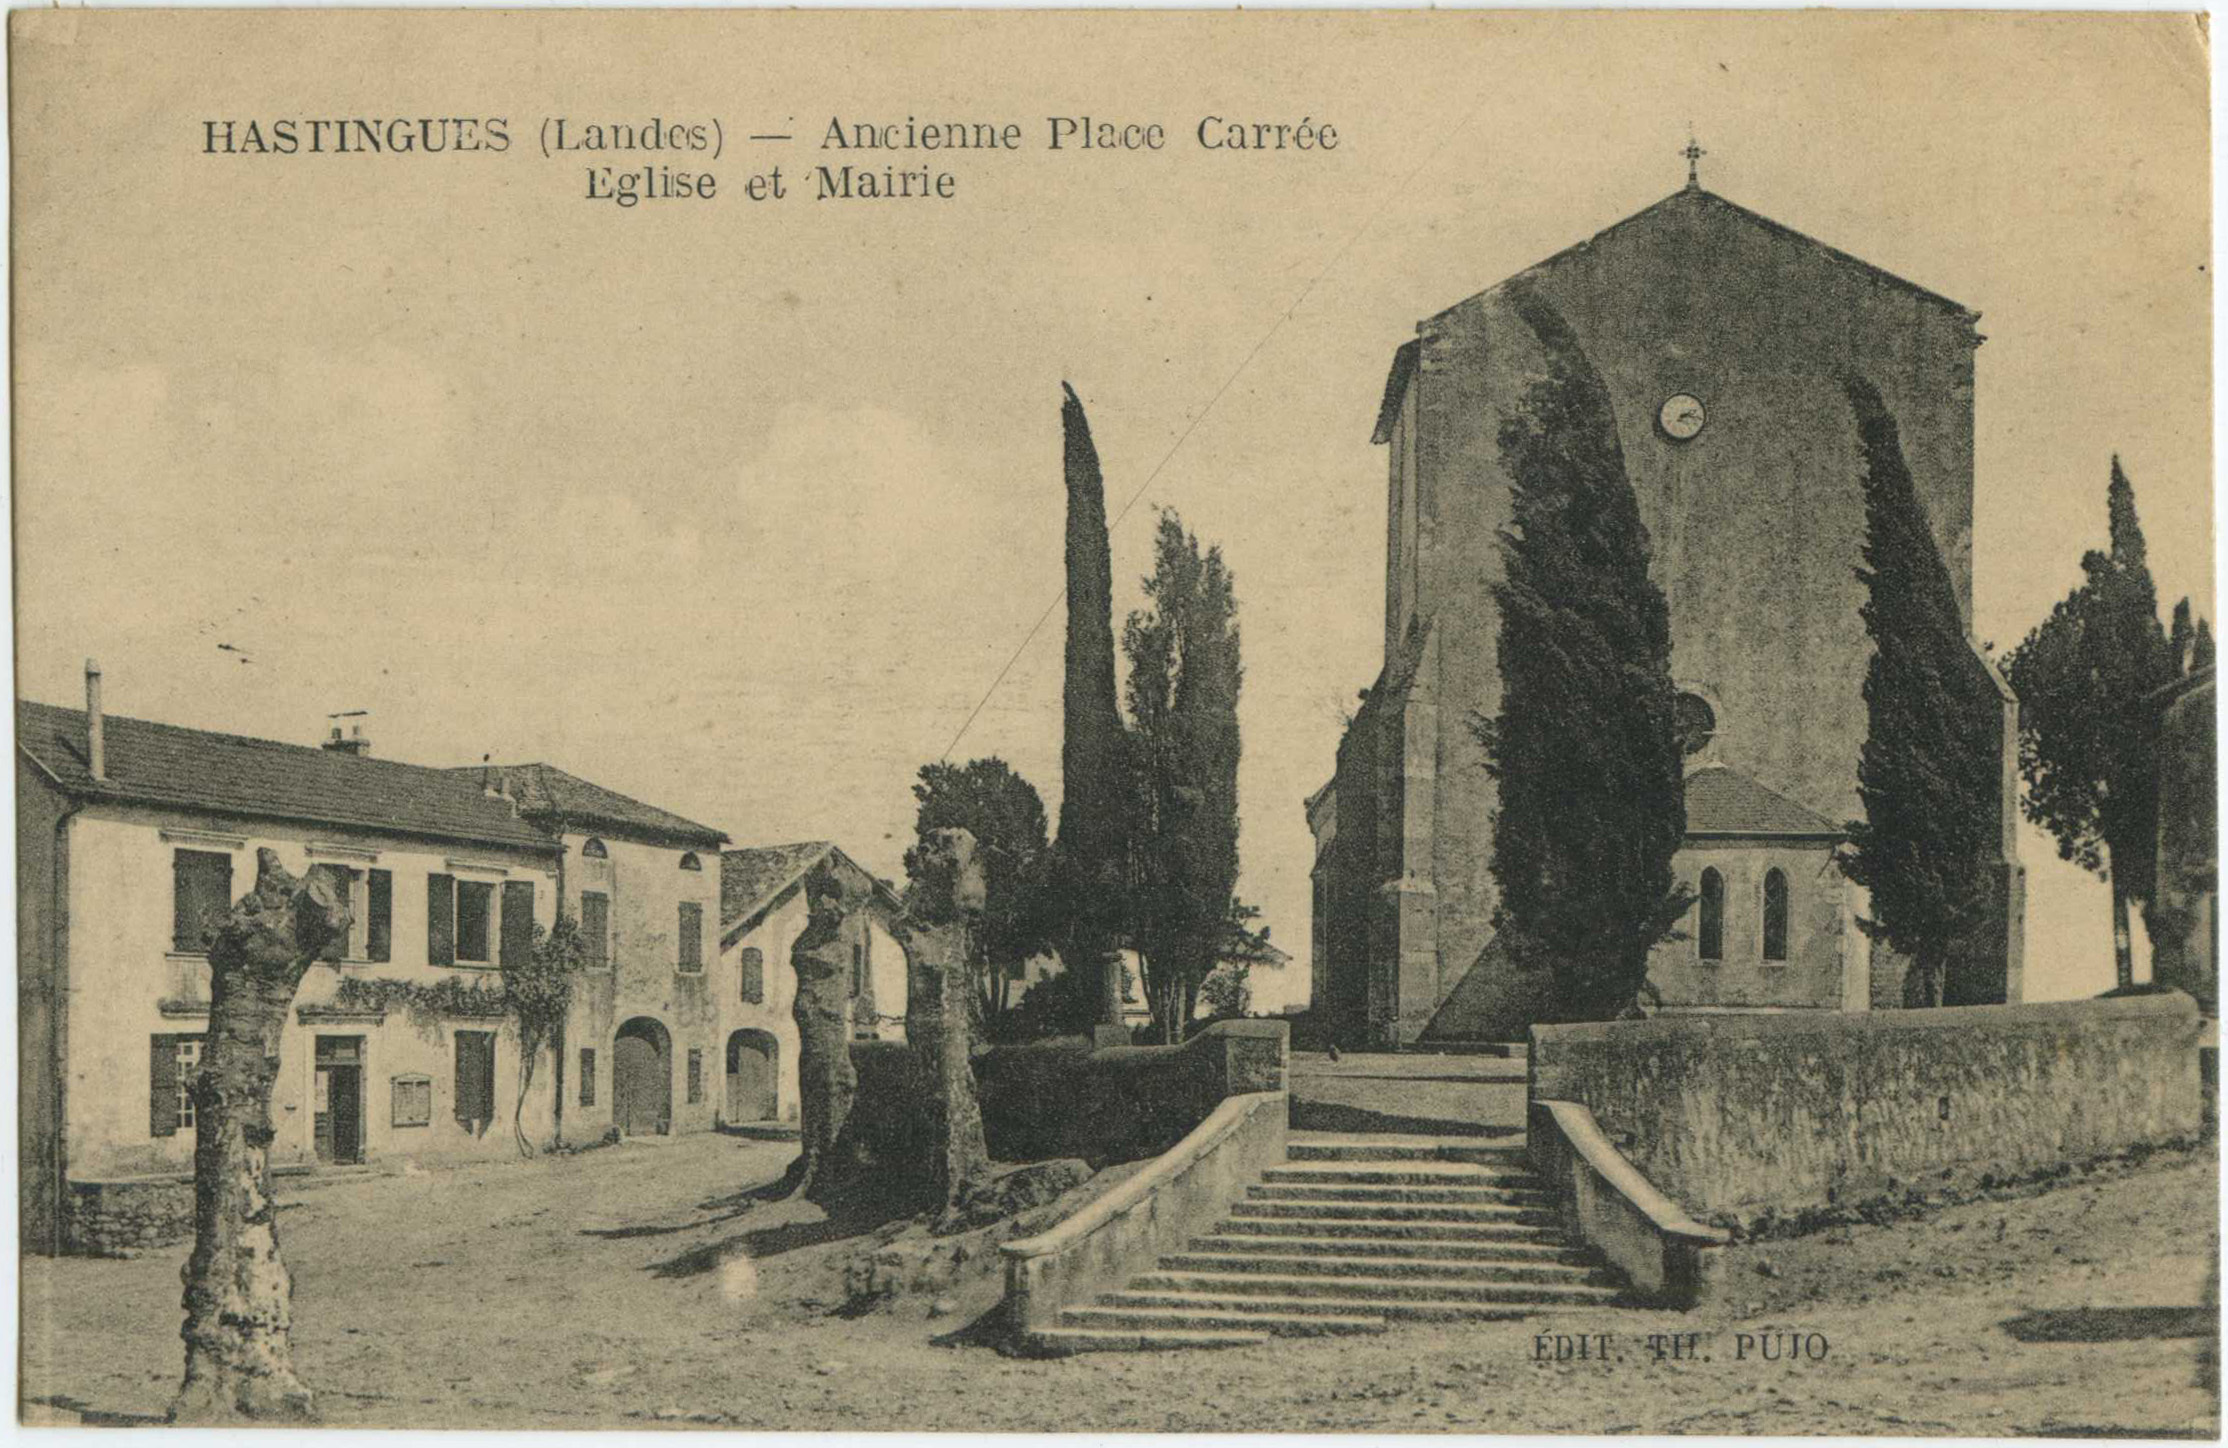 Hastingues - Ancienne Place Carrée - Eglise et Mairie